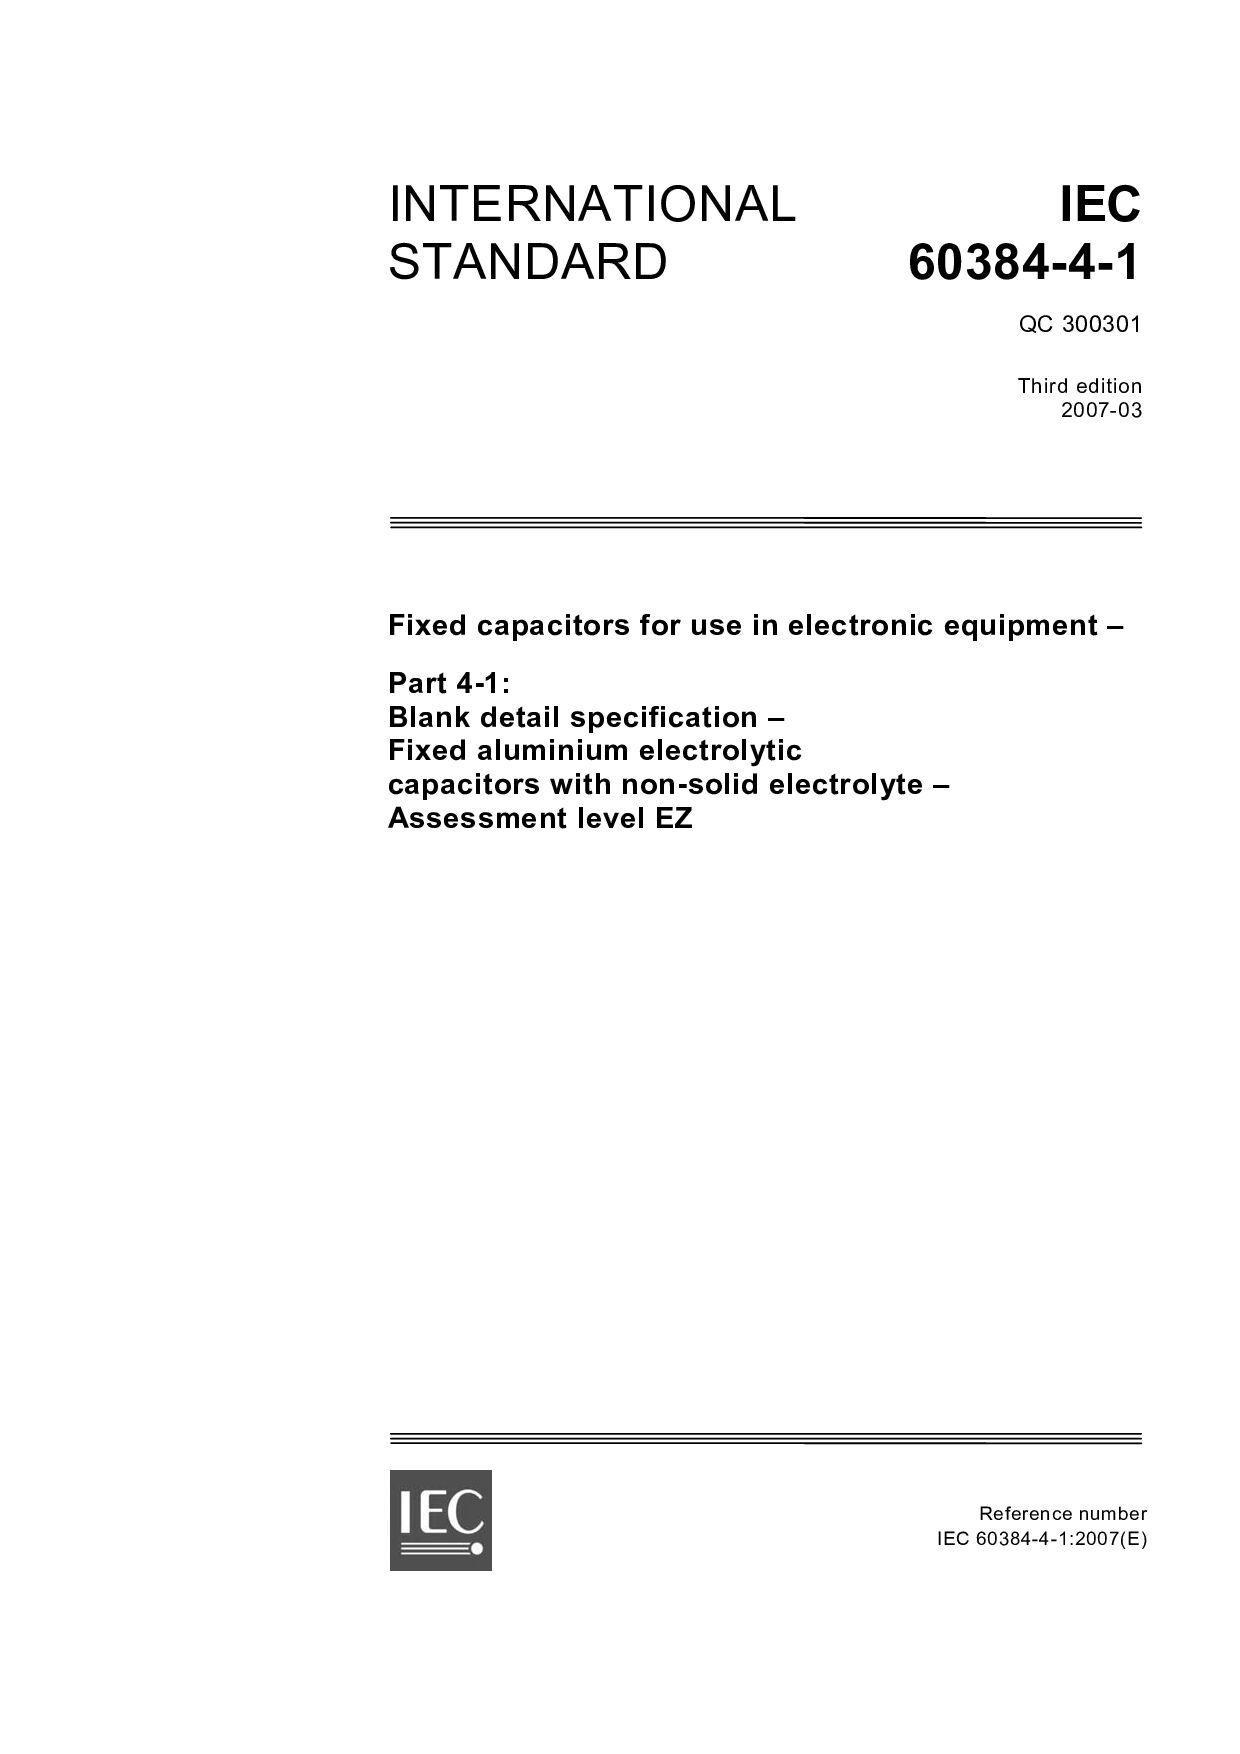 IEC 60384-4-1:2007封面图